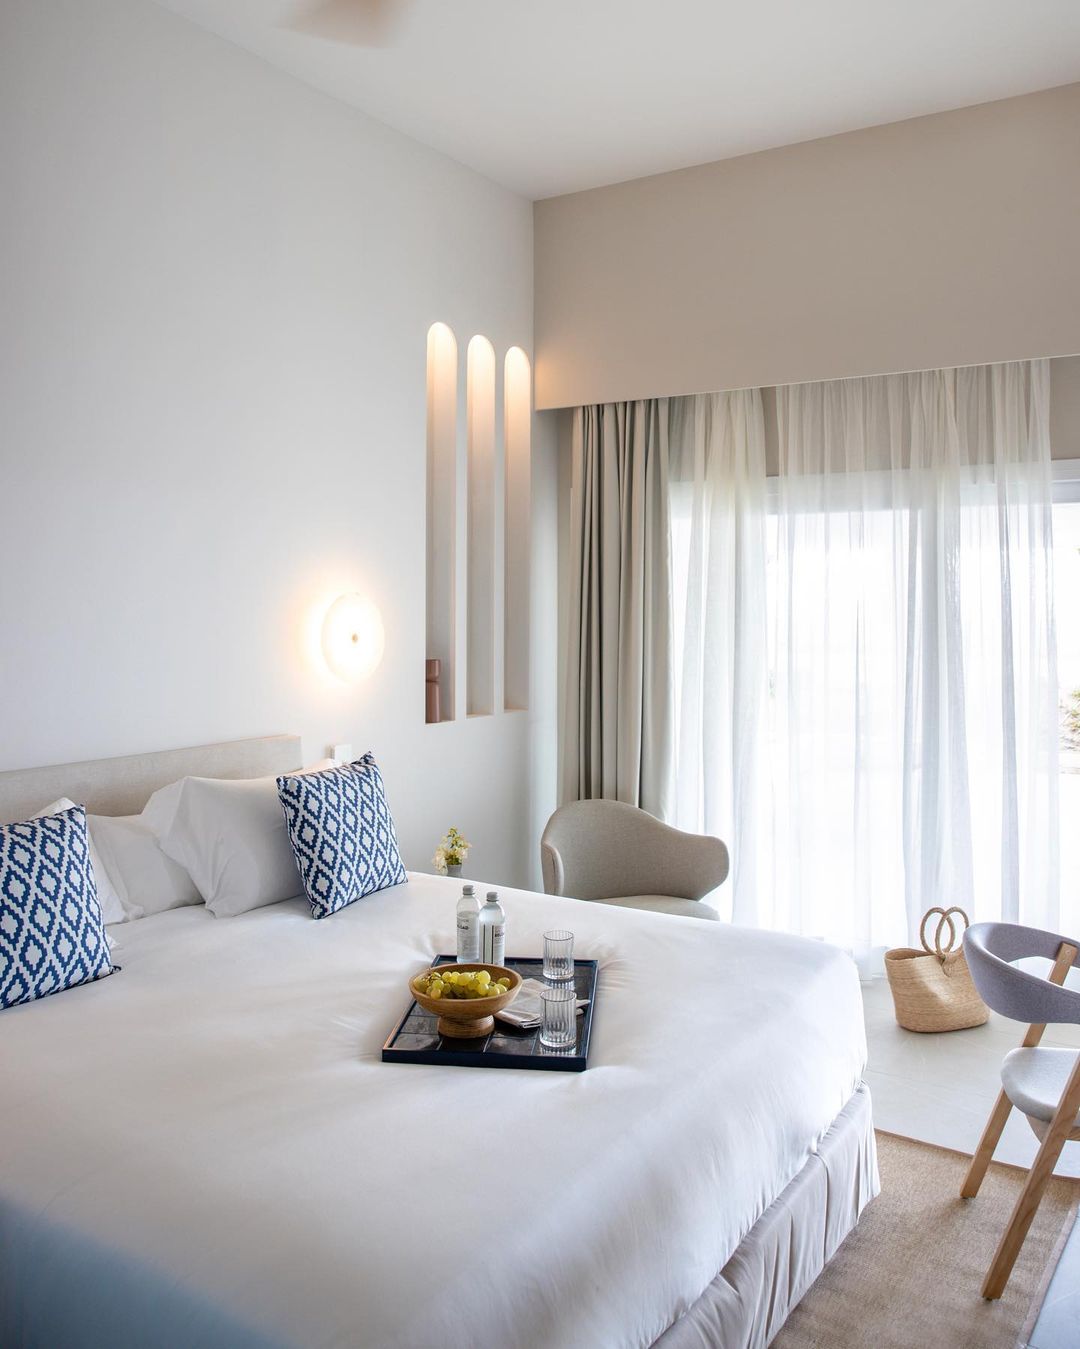 METT Hotel & Beach Resort Marbella – Estepona